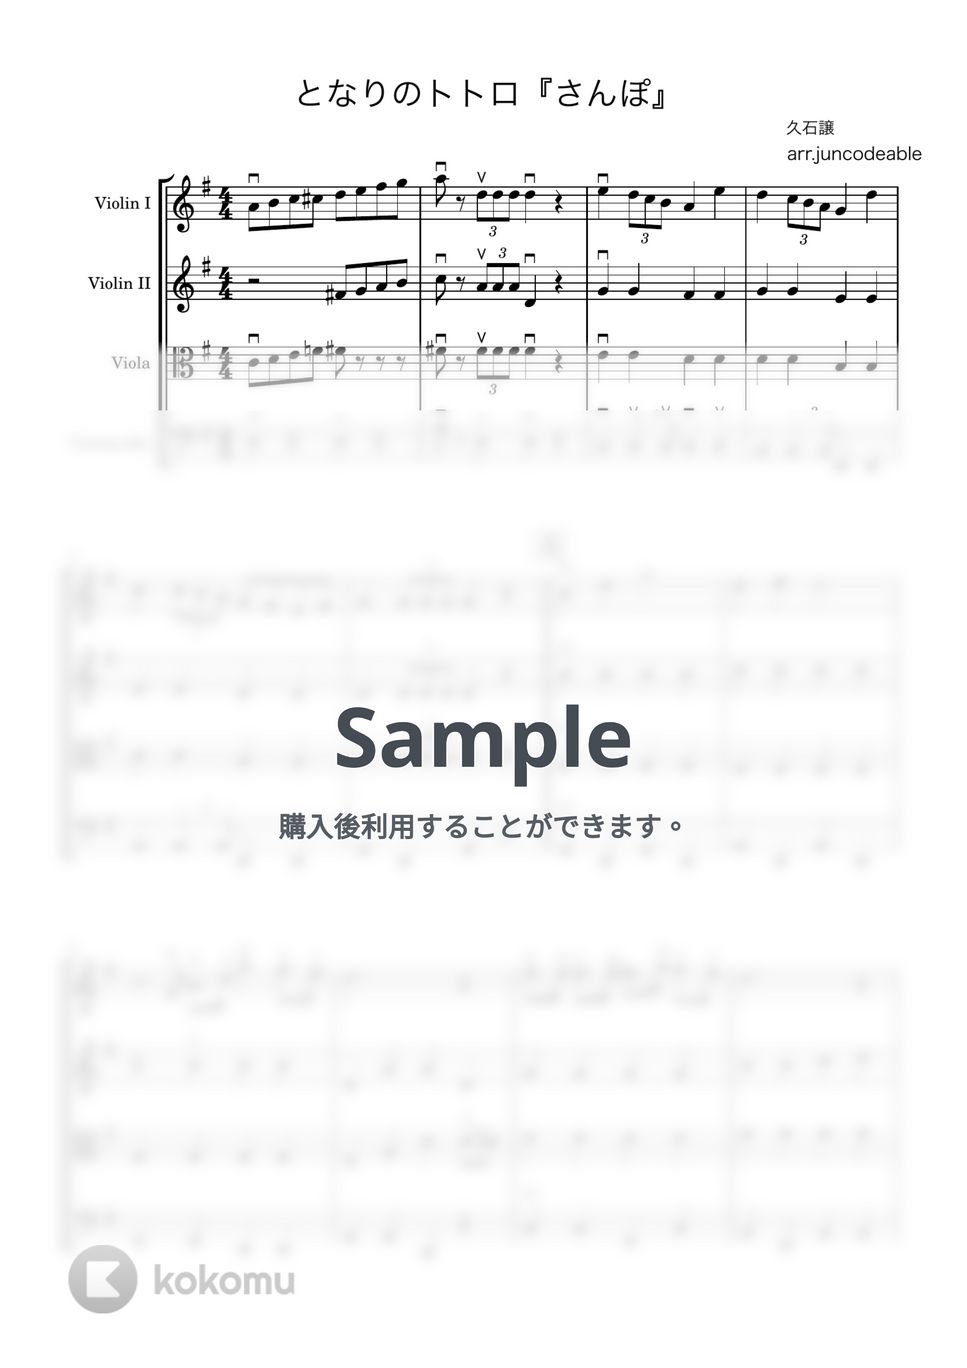 久石譲 - となりのトトロ「さんぽ」 (弦楽合奏) by arr. juncodeable